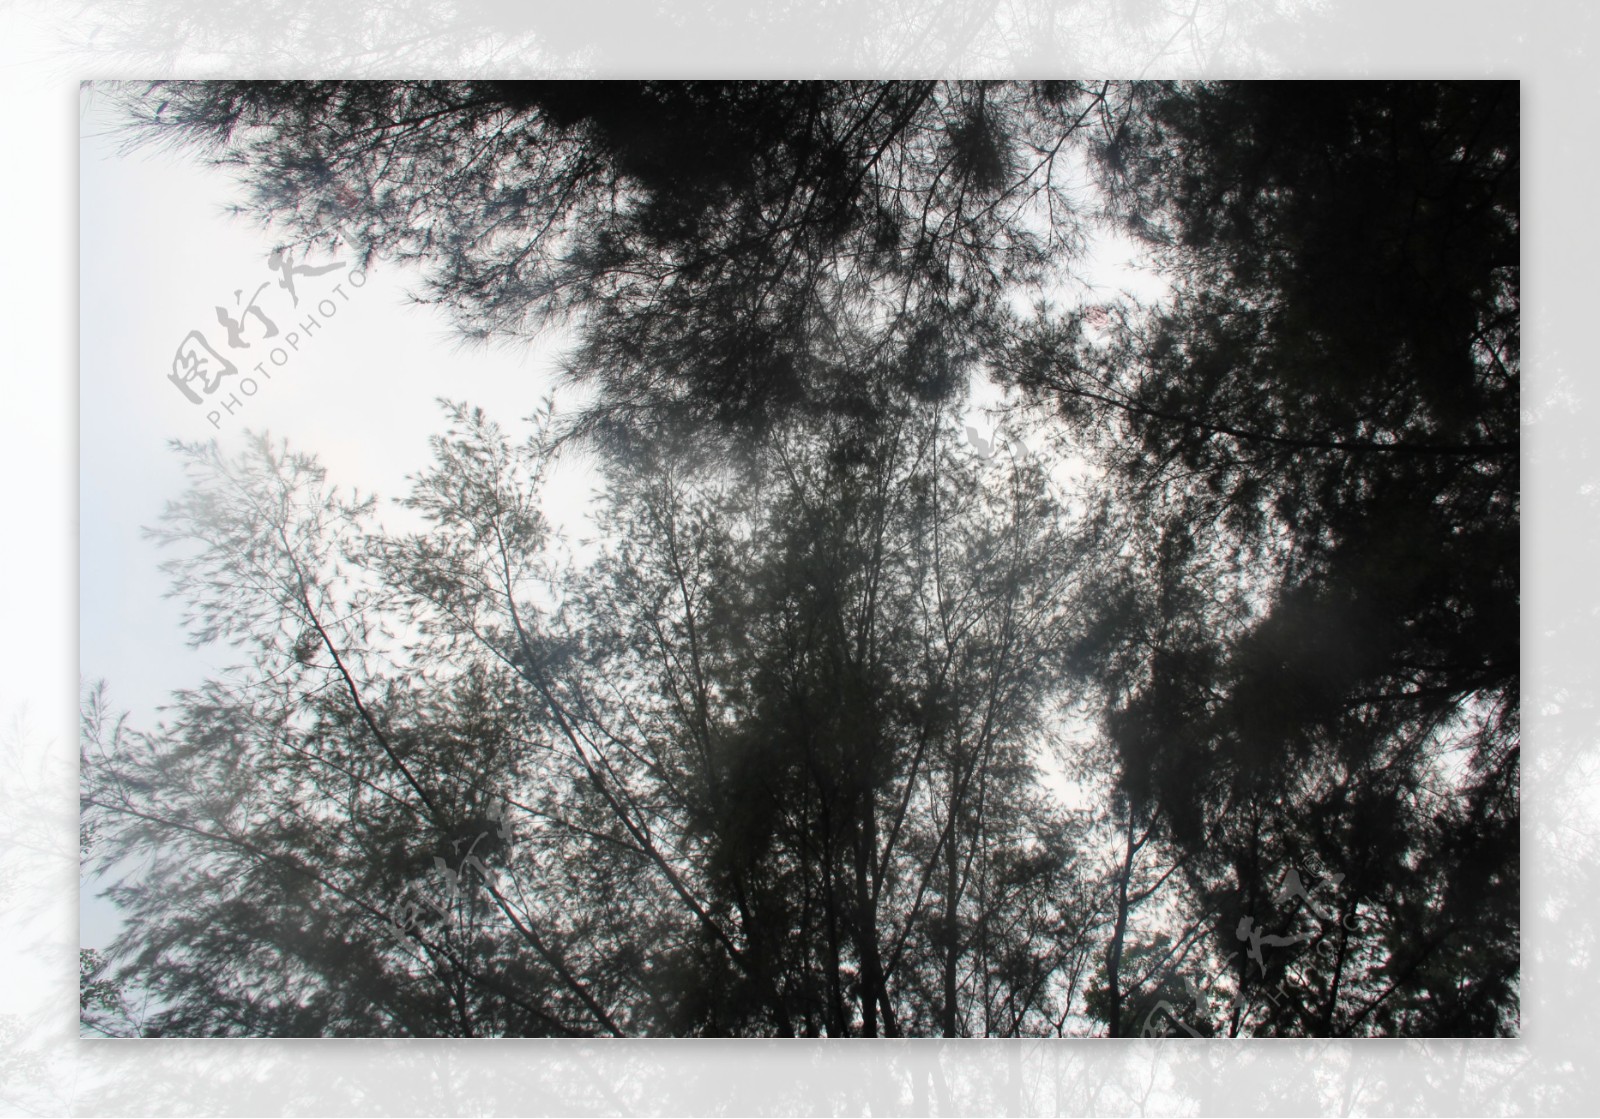 树影斑驳图片